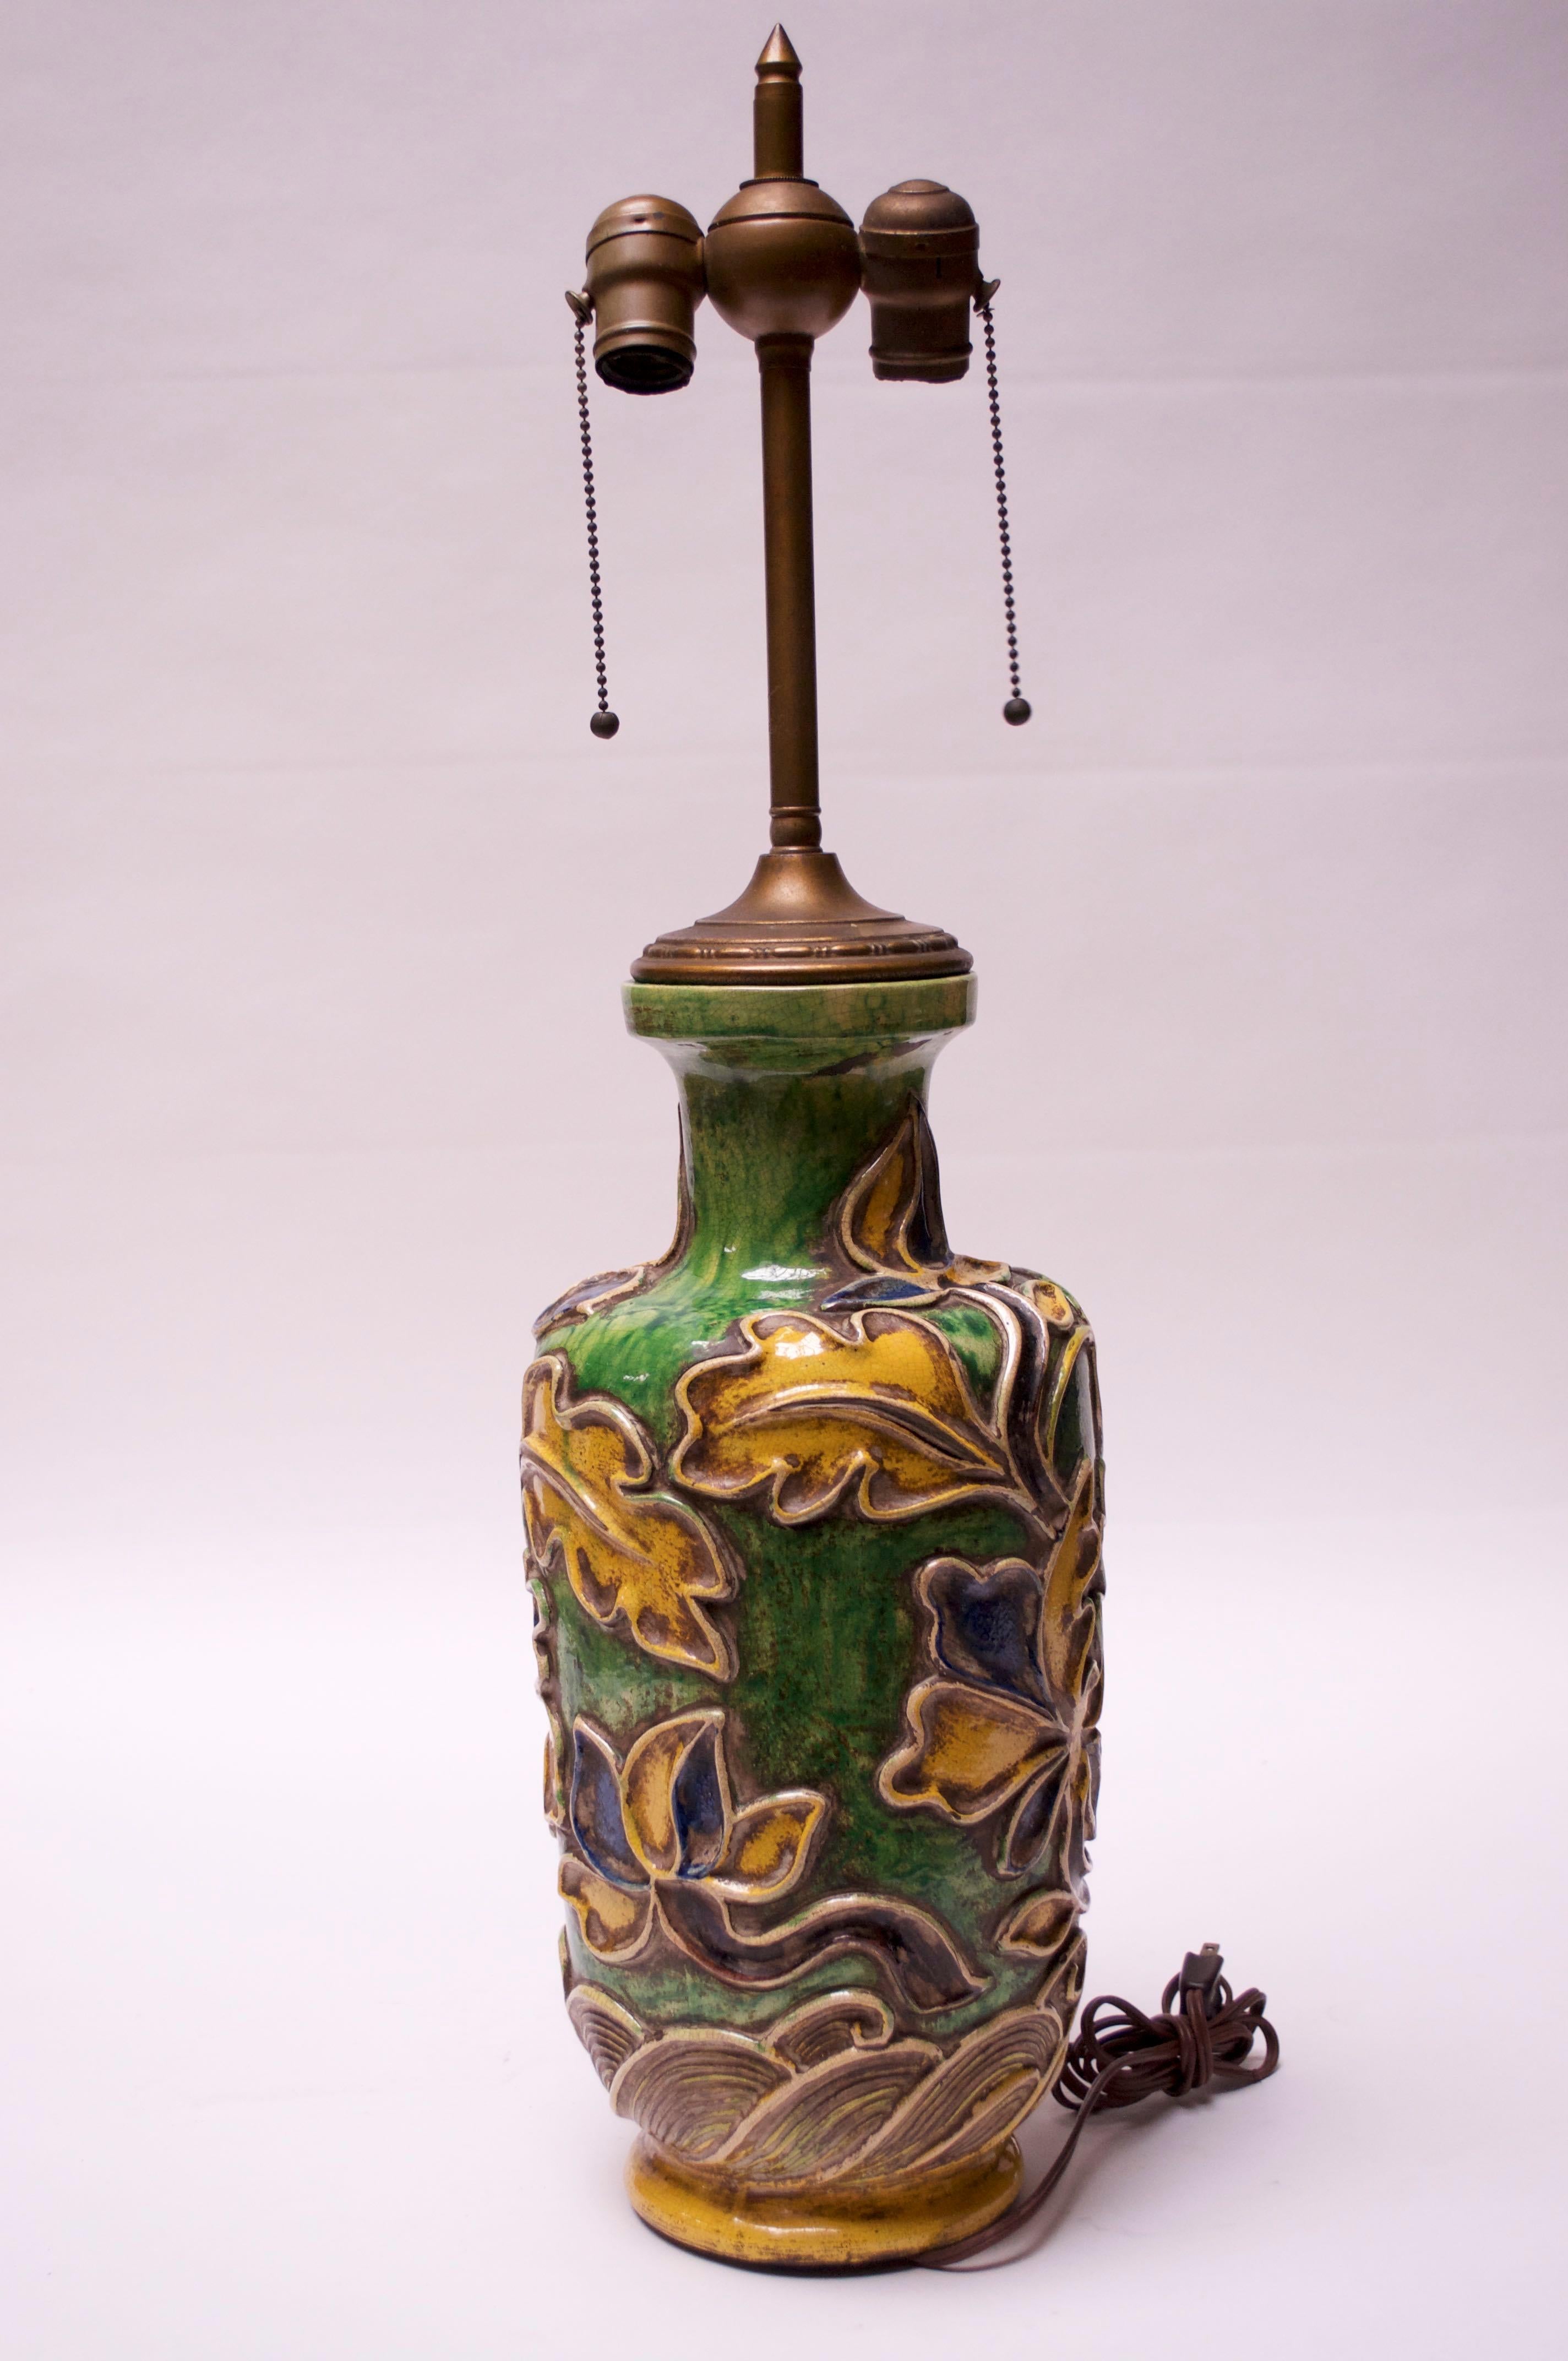 Exemple précoce et rare (années 1930) du céramiste Ugo Zaccagnini, composé d'un motif floral ou de pétales en vert, bleu et jaune éclatants, avec une double prise, une tige et un fleuron en laiton. Bel état d'origine avec seulement une usure mineure